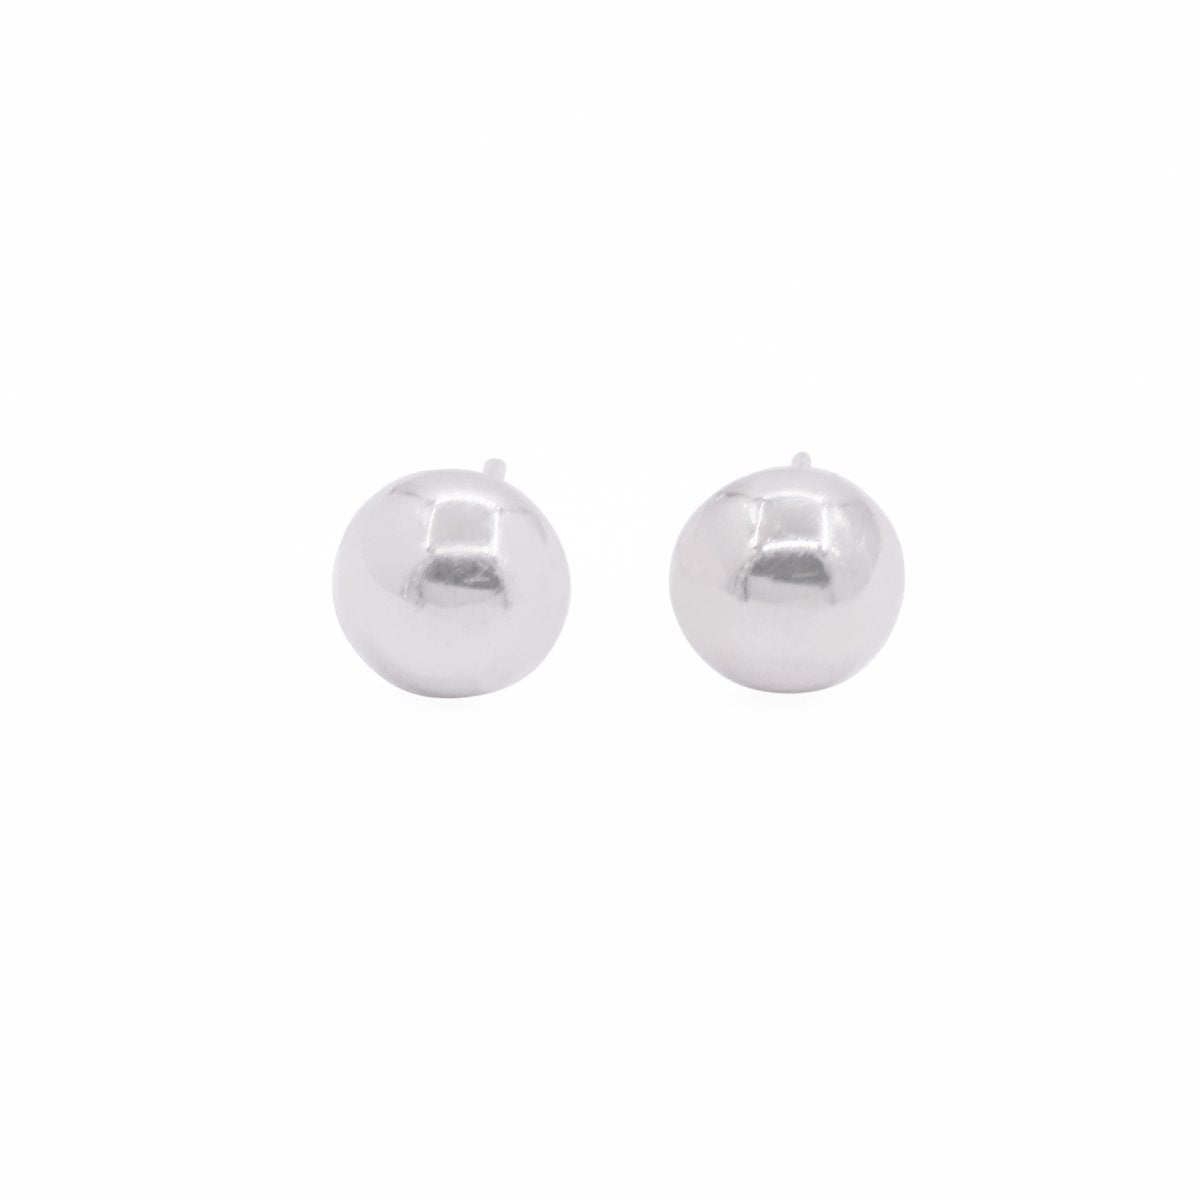 Sterling Silver Hemisphere Stud Earrings - 2